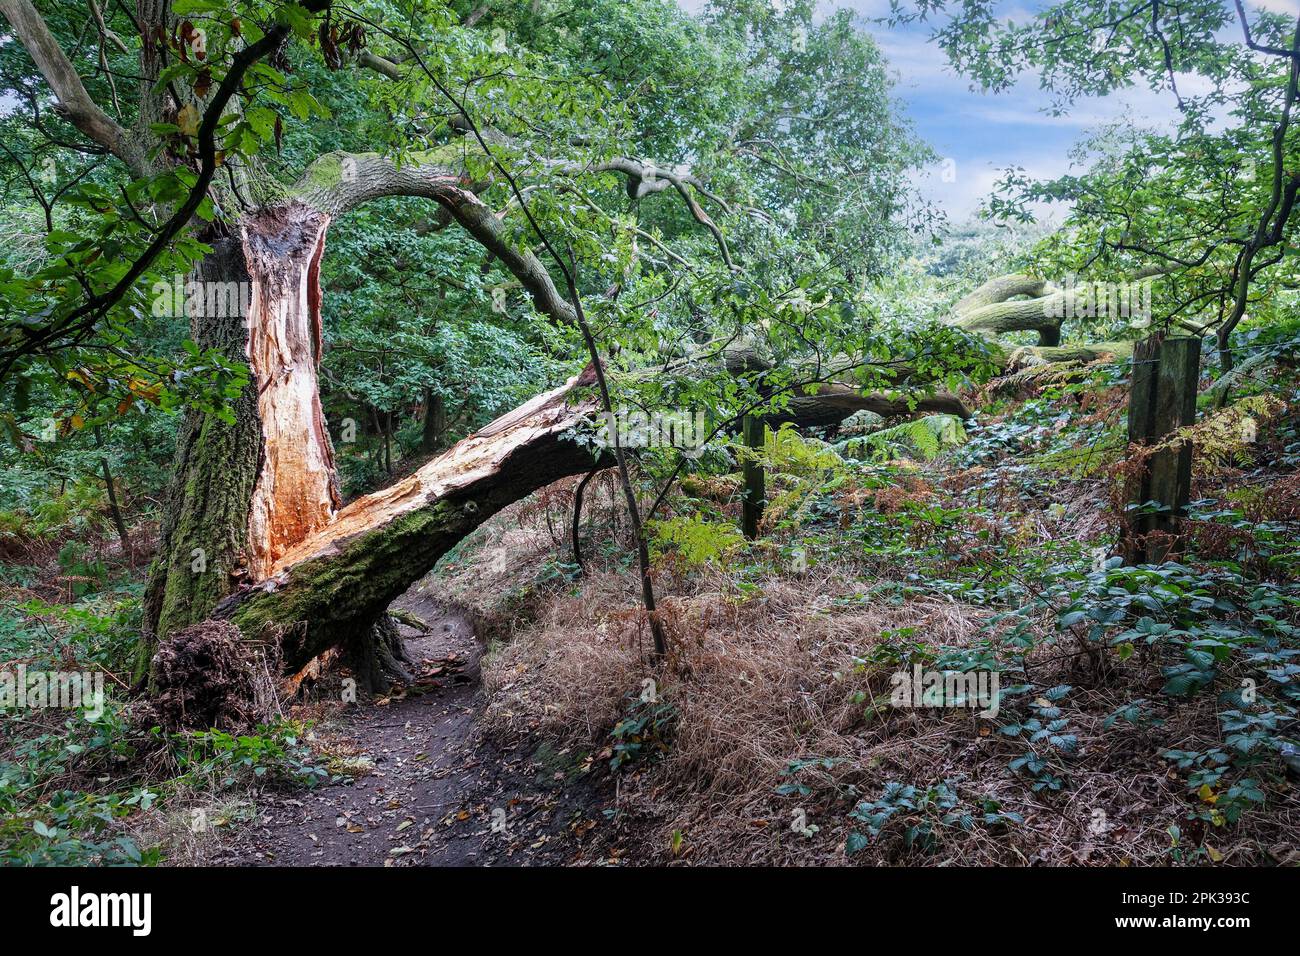 Ein alter gewöhnlicher oder englischer Eichenbaum (Quercus robur), der sich nach einem schweren Sturm in England in der Mitte seines Stamms oder Boels aufgespalten hat Stockfoto